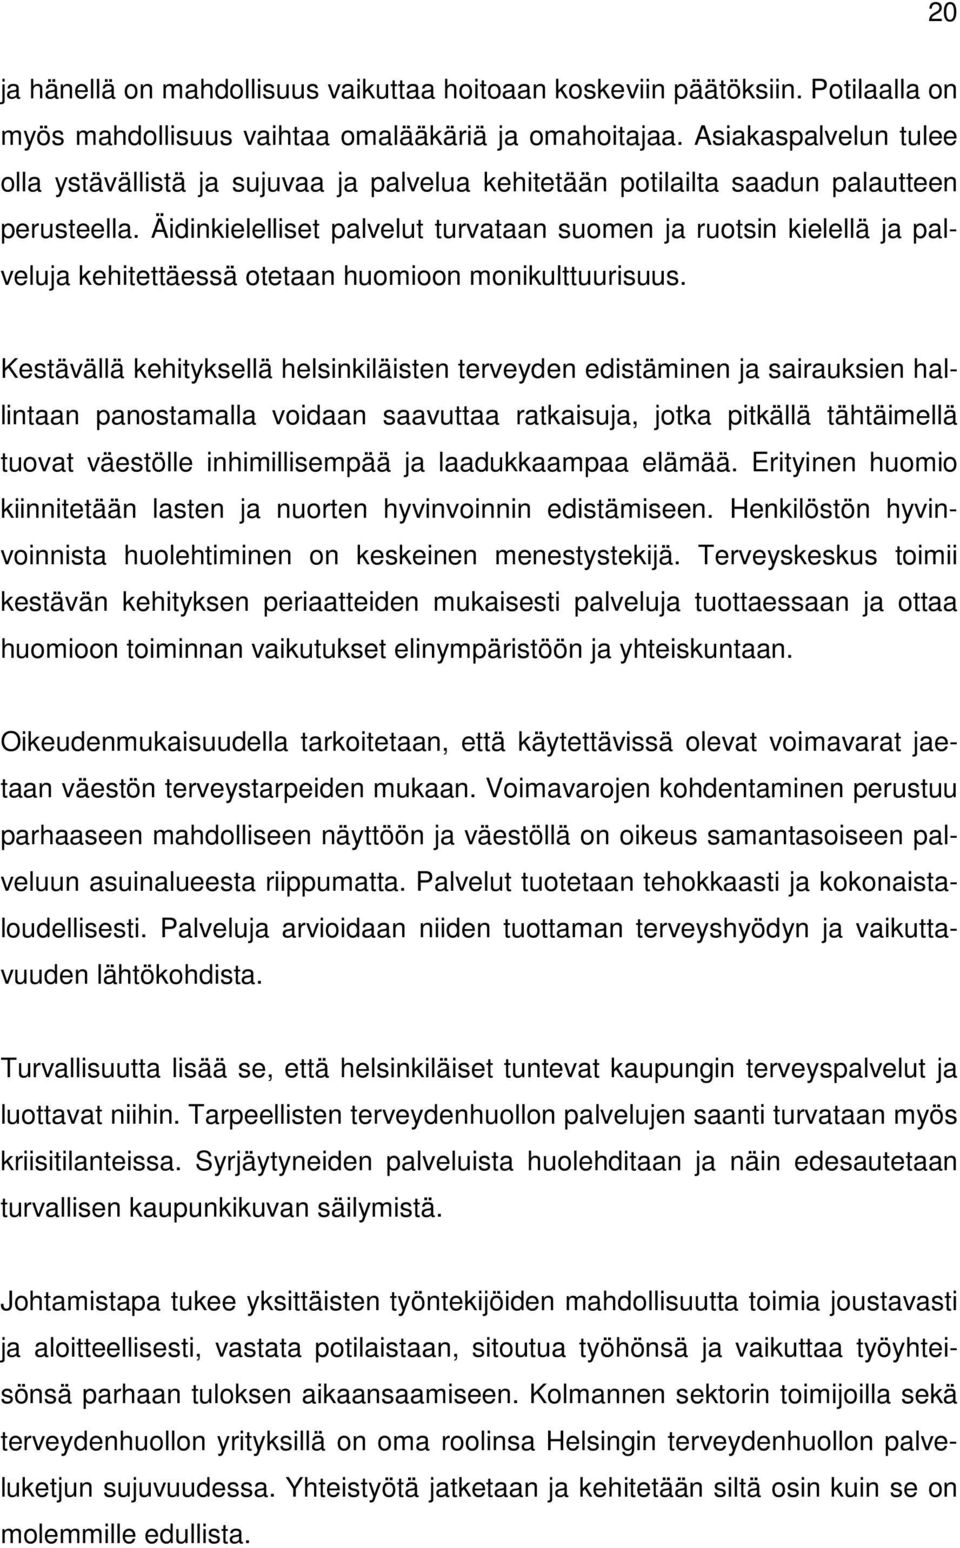 Äidinkielelliset palvelut turvataan suomen ja ruotsin kielellä ja palveluja kehitettäessä otetaan huomioon monikulttuurisuus.